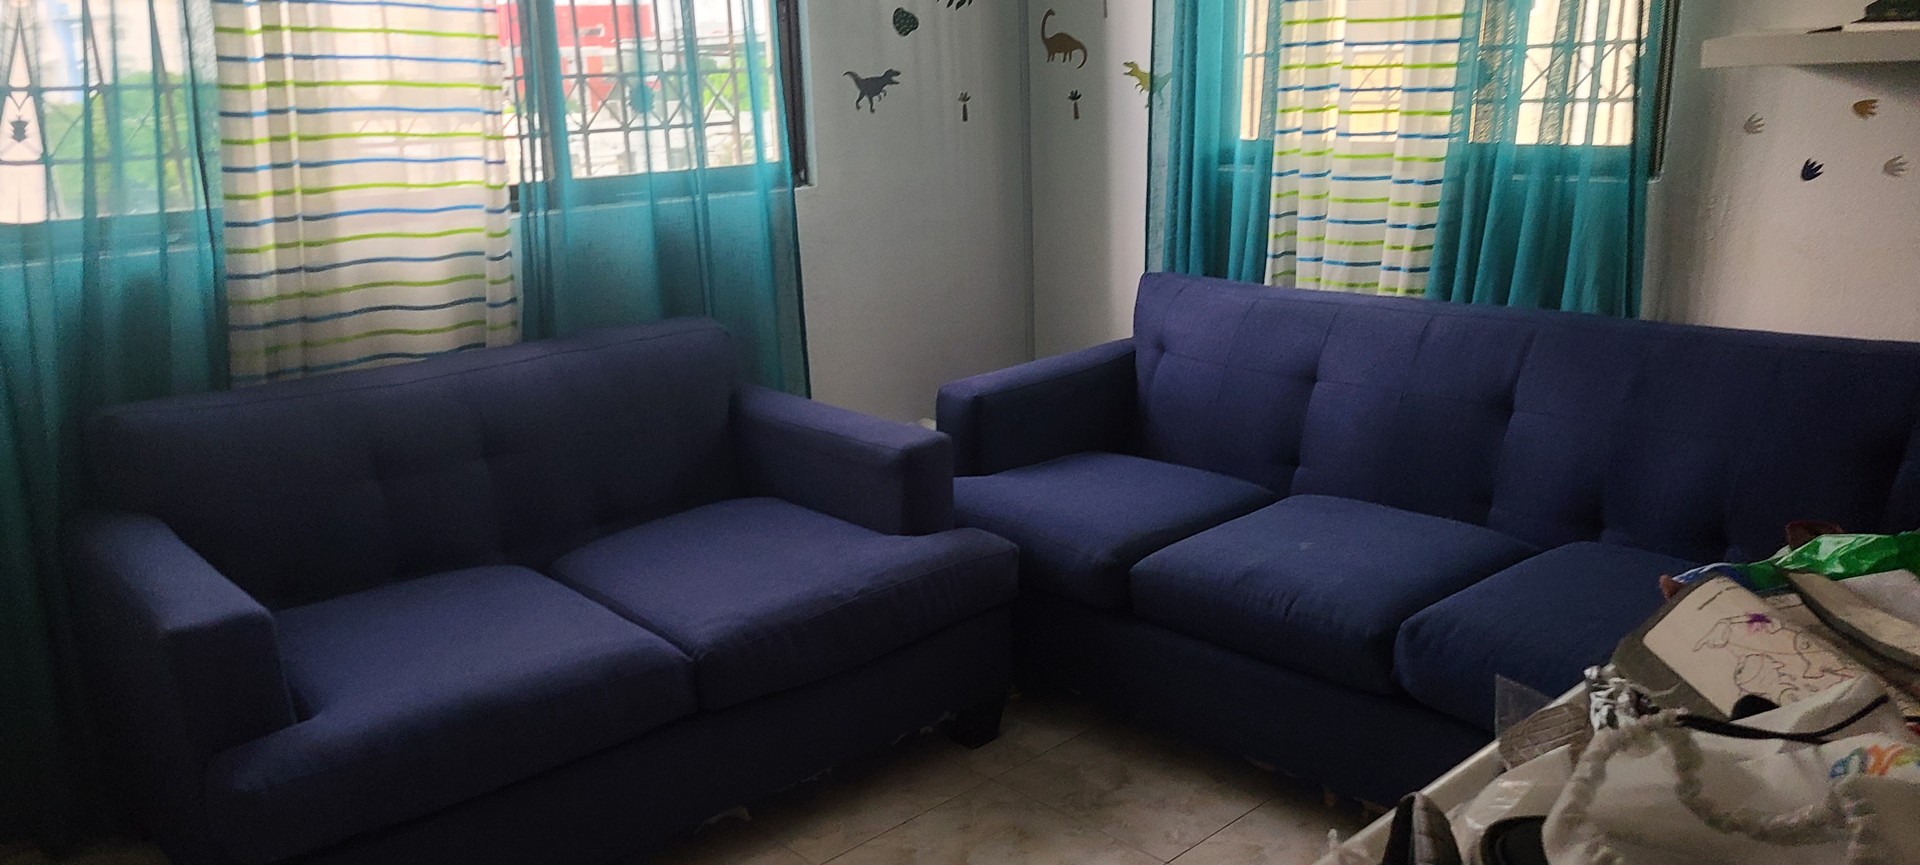 muebles y colchones - Juego de muebles azul oscuro  (1 mueble de 3 plazas y 1 de 2 plazas)  3